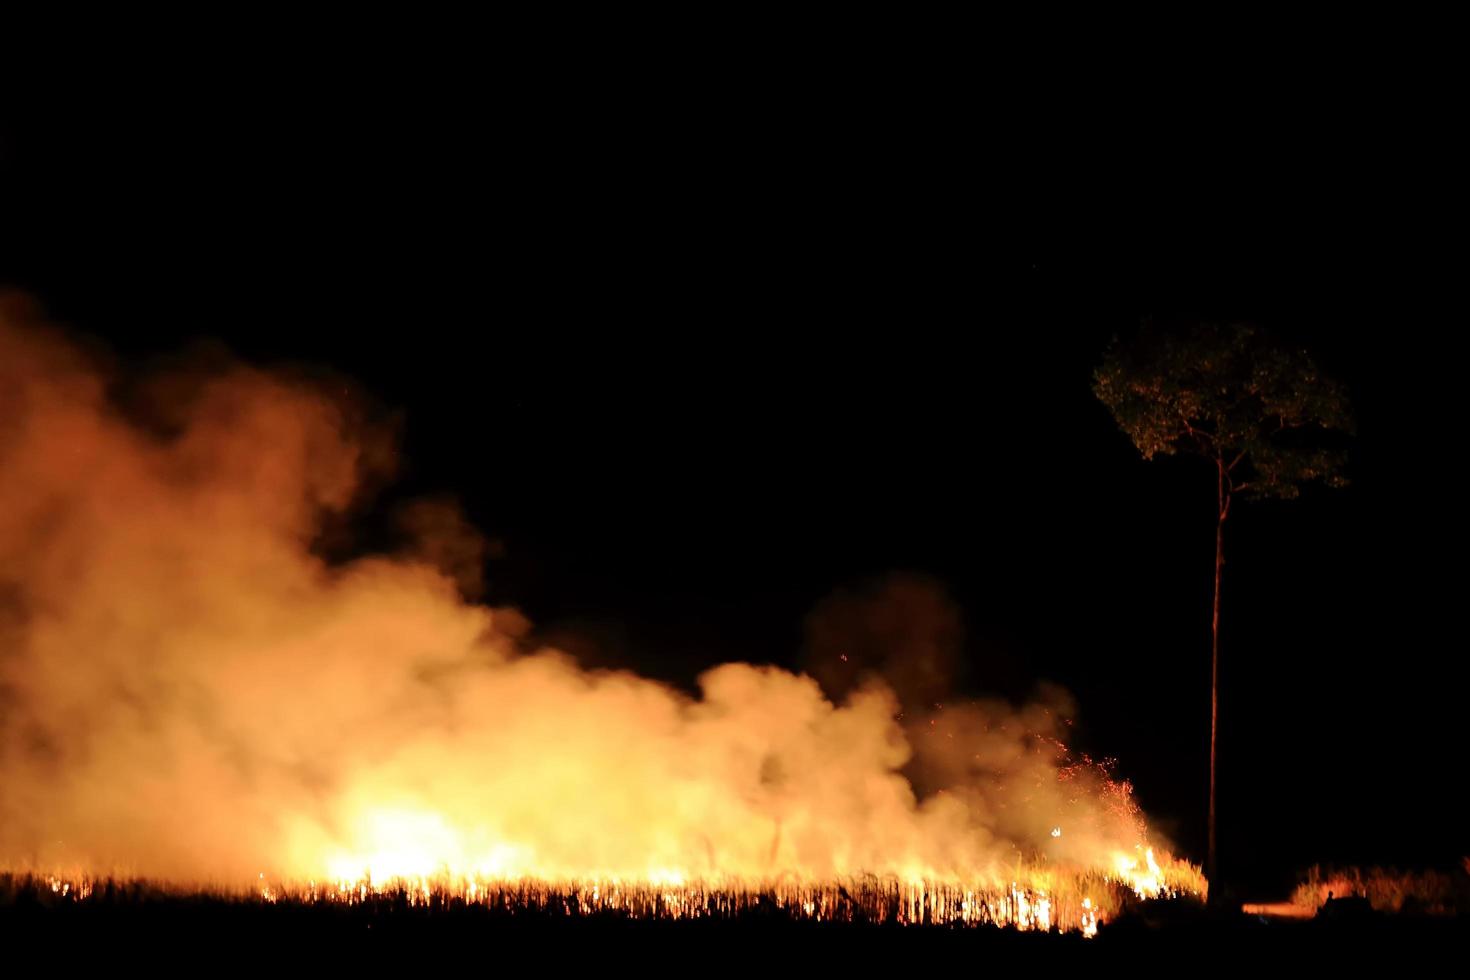 los incendios forestales quemando humo naranja y rojo llenaron el cielo por la noche. foto